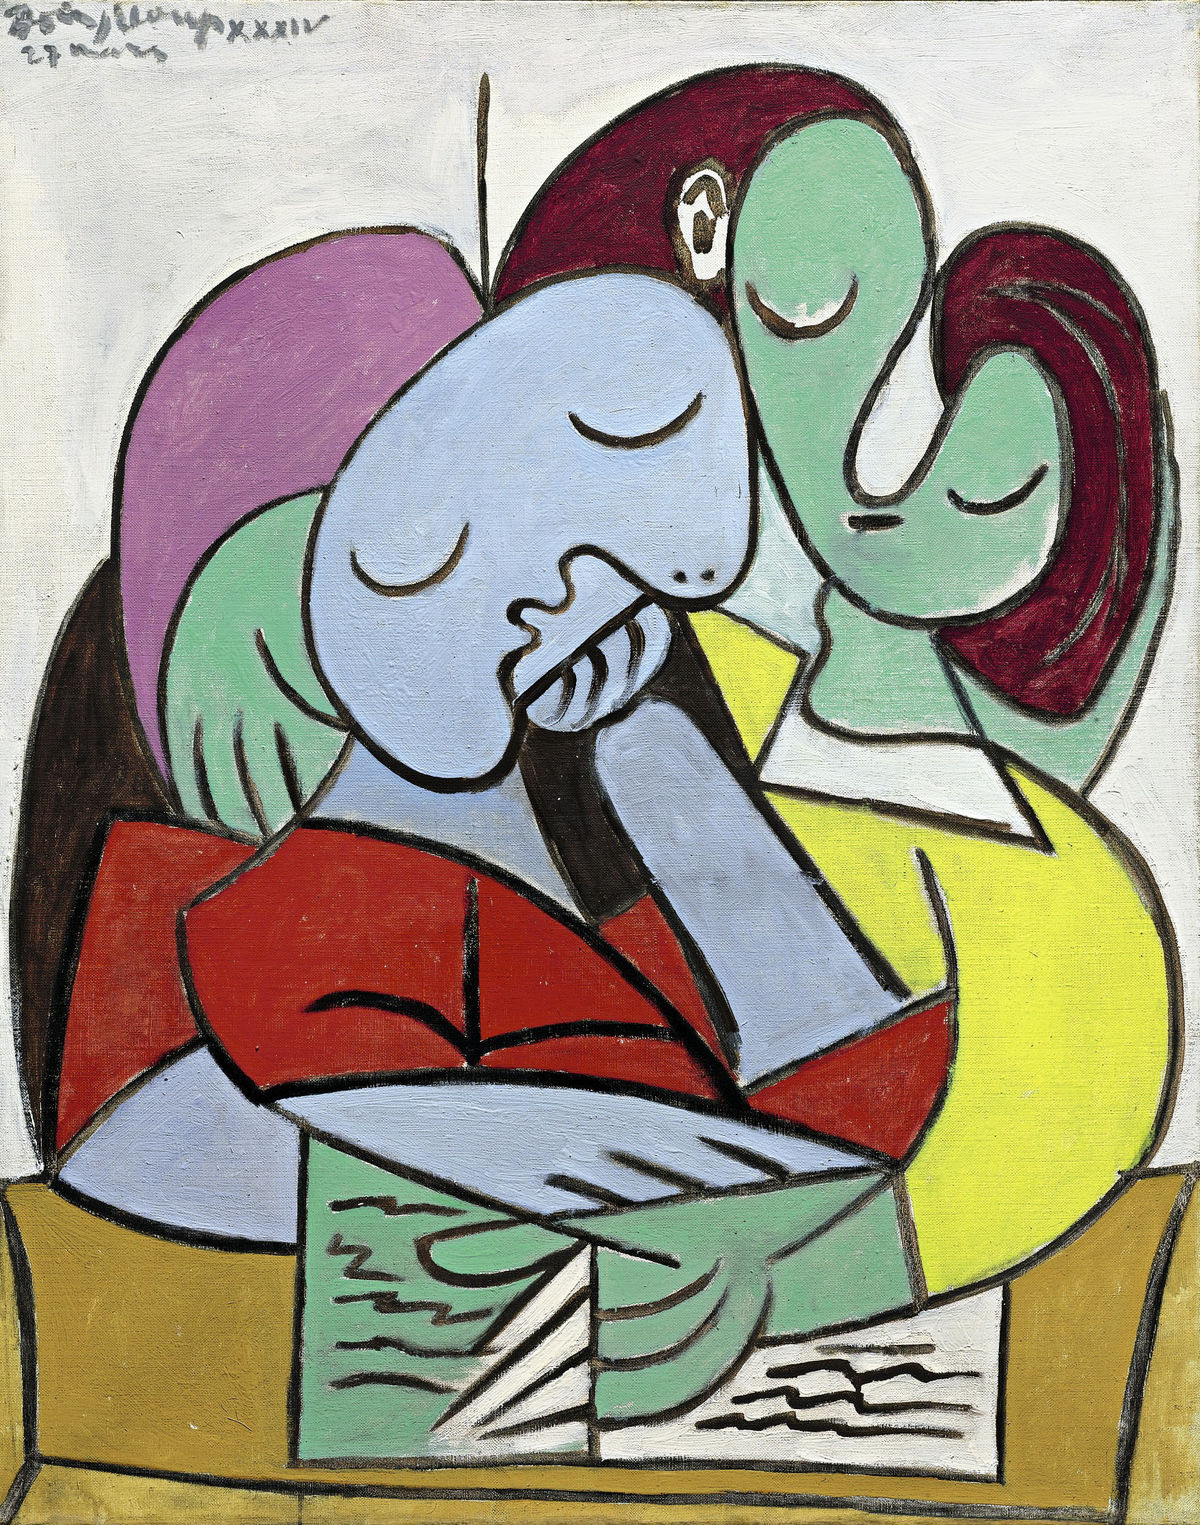 Pablo Picasso, Femme lisant (deux personnages), 1934, bloomberg.com